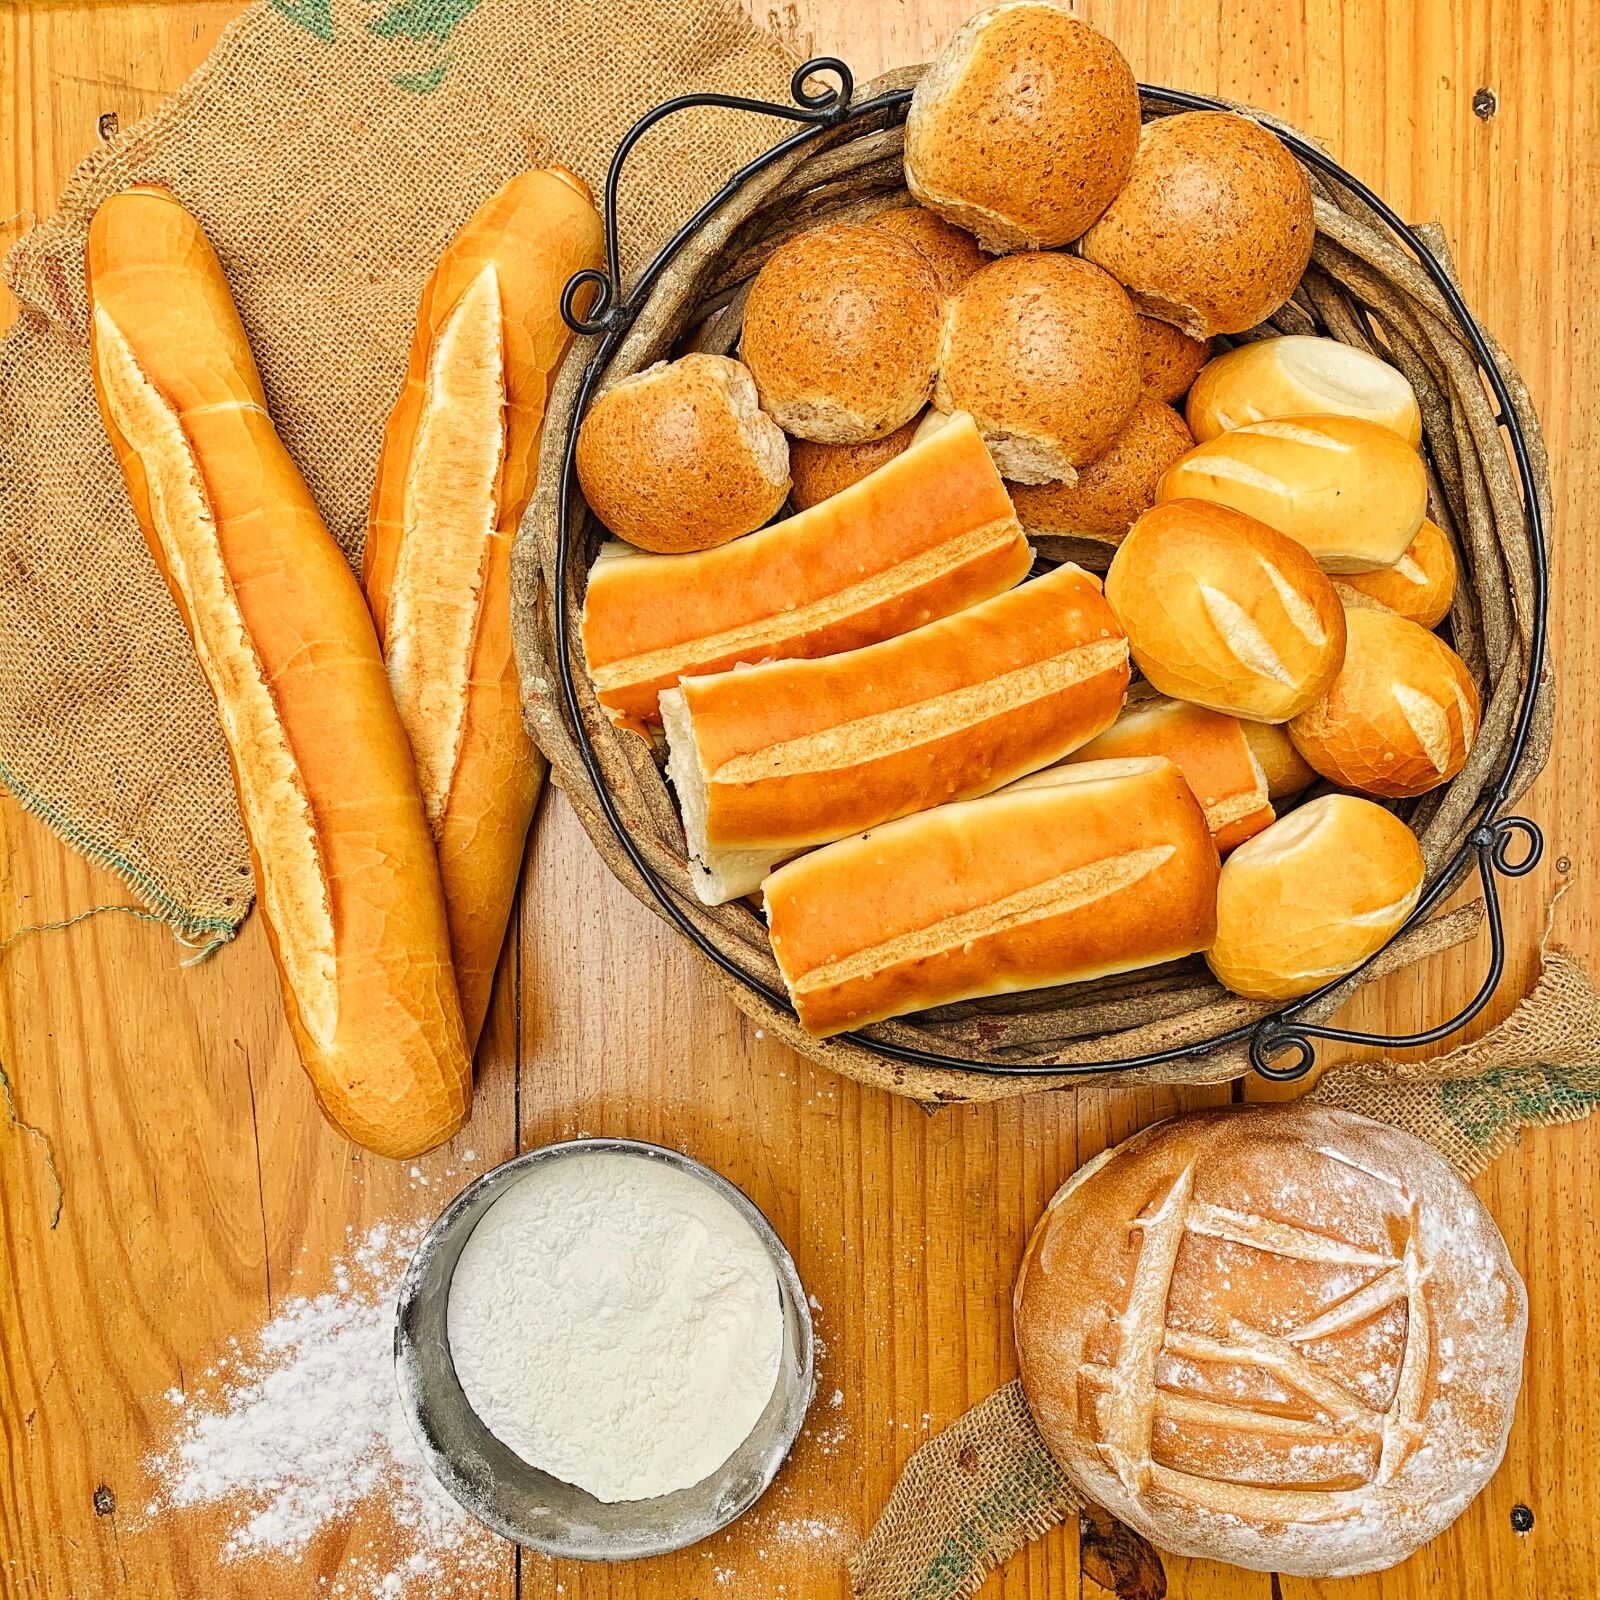 Apple iPhone XR sample photo. Bread, flour, bakery photography